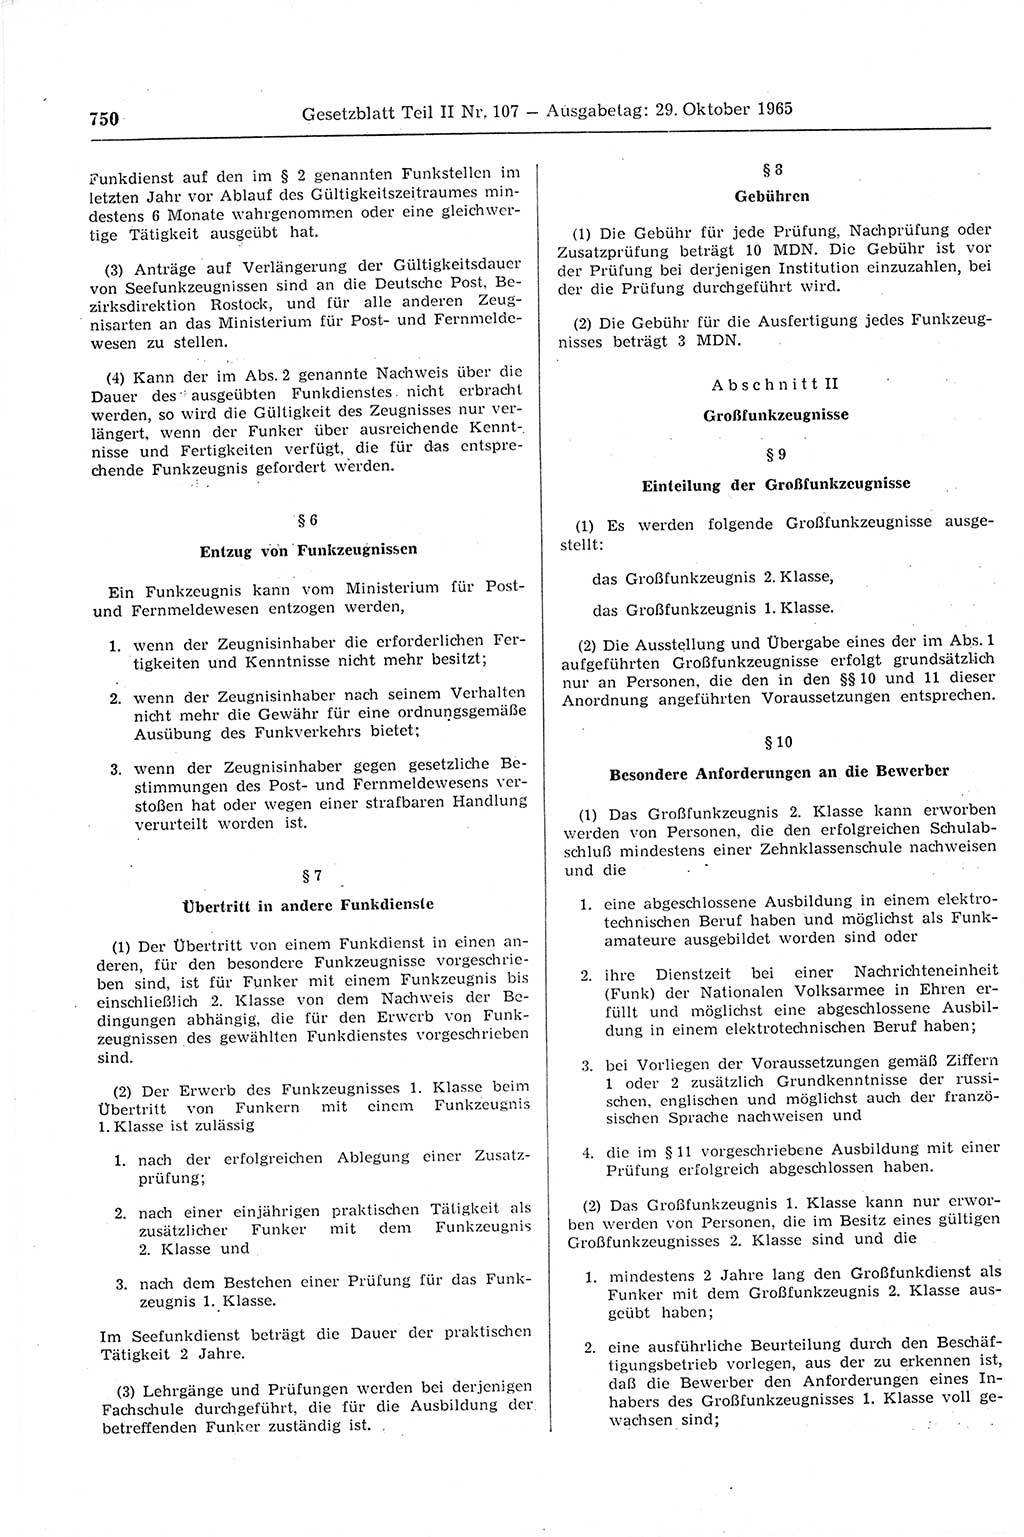 Gesetzblatt (GBl.) der Deutschen Demokratischen Republik (DDR) Teil ⅠⅠ 1965, Seite 750 (GBl. DDR ⅠⅠ 1965, S. 750)